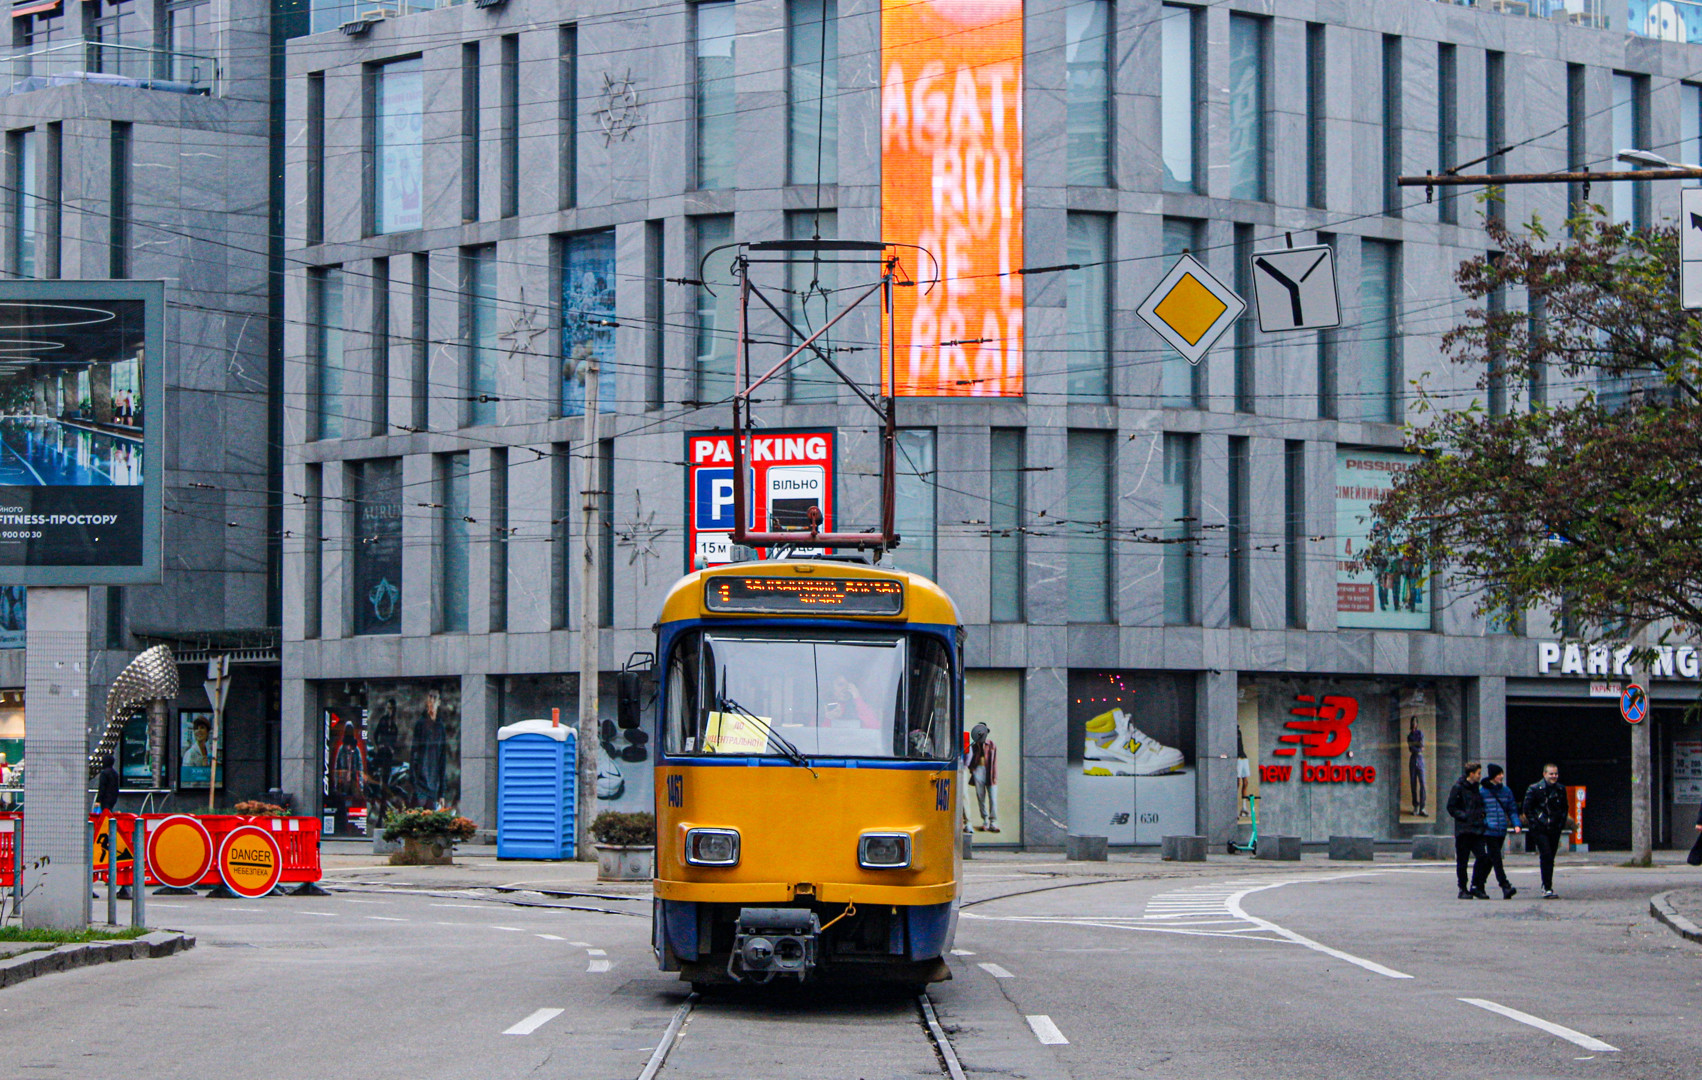 Дніпро закупило 26 трамваїв у Лейпцига. Ціна – символічна: фото